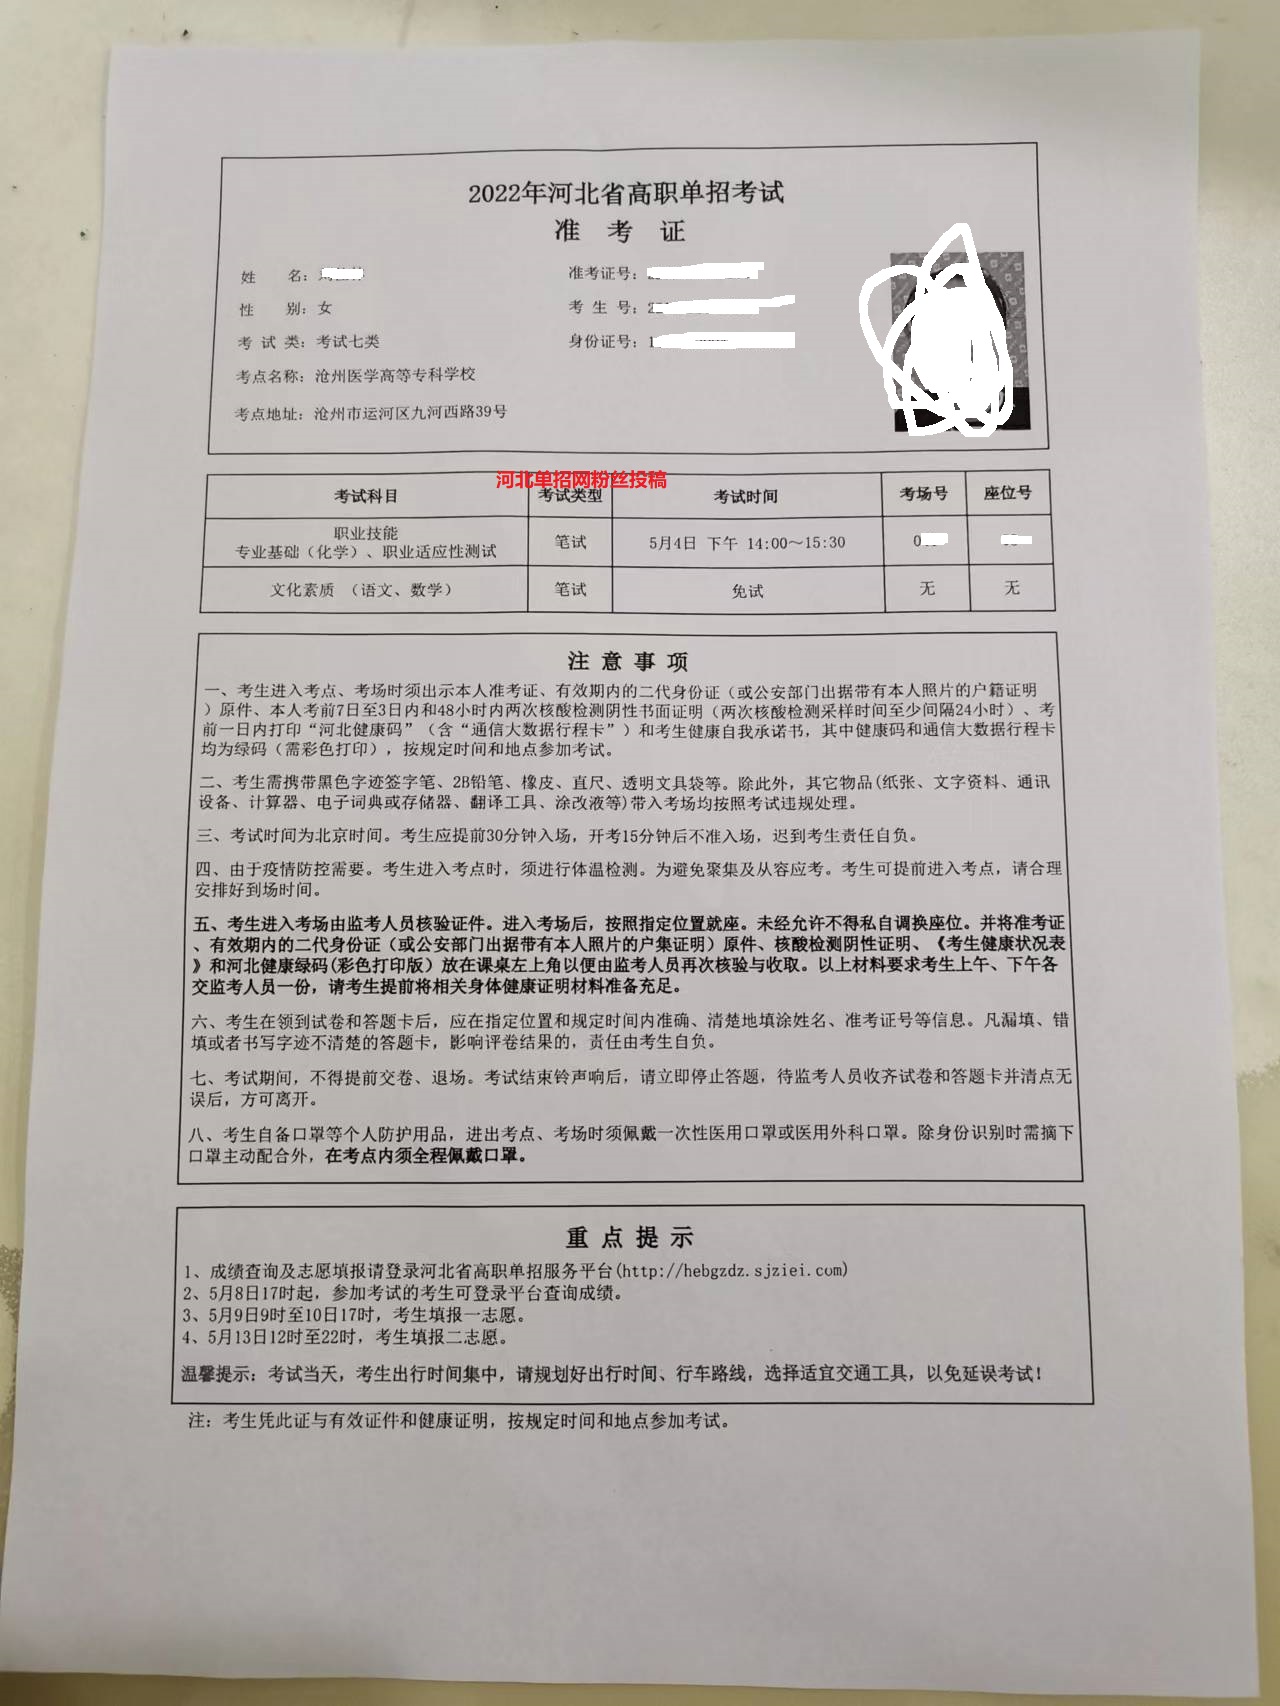 2022年5月4号河北省高职单招考试所需物品清单 图3